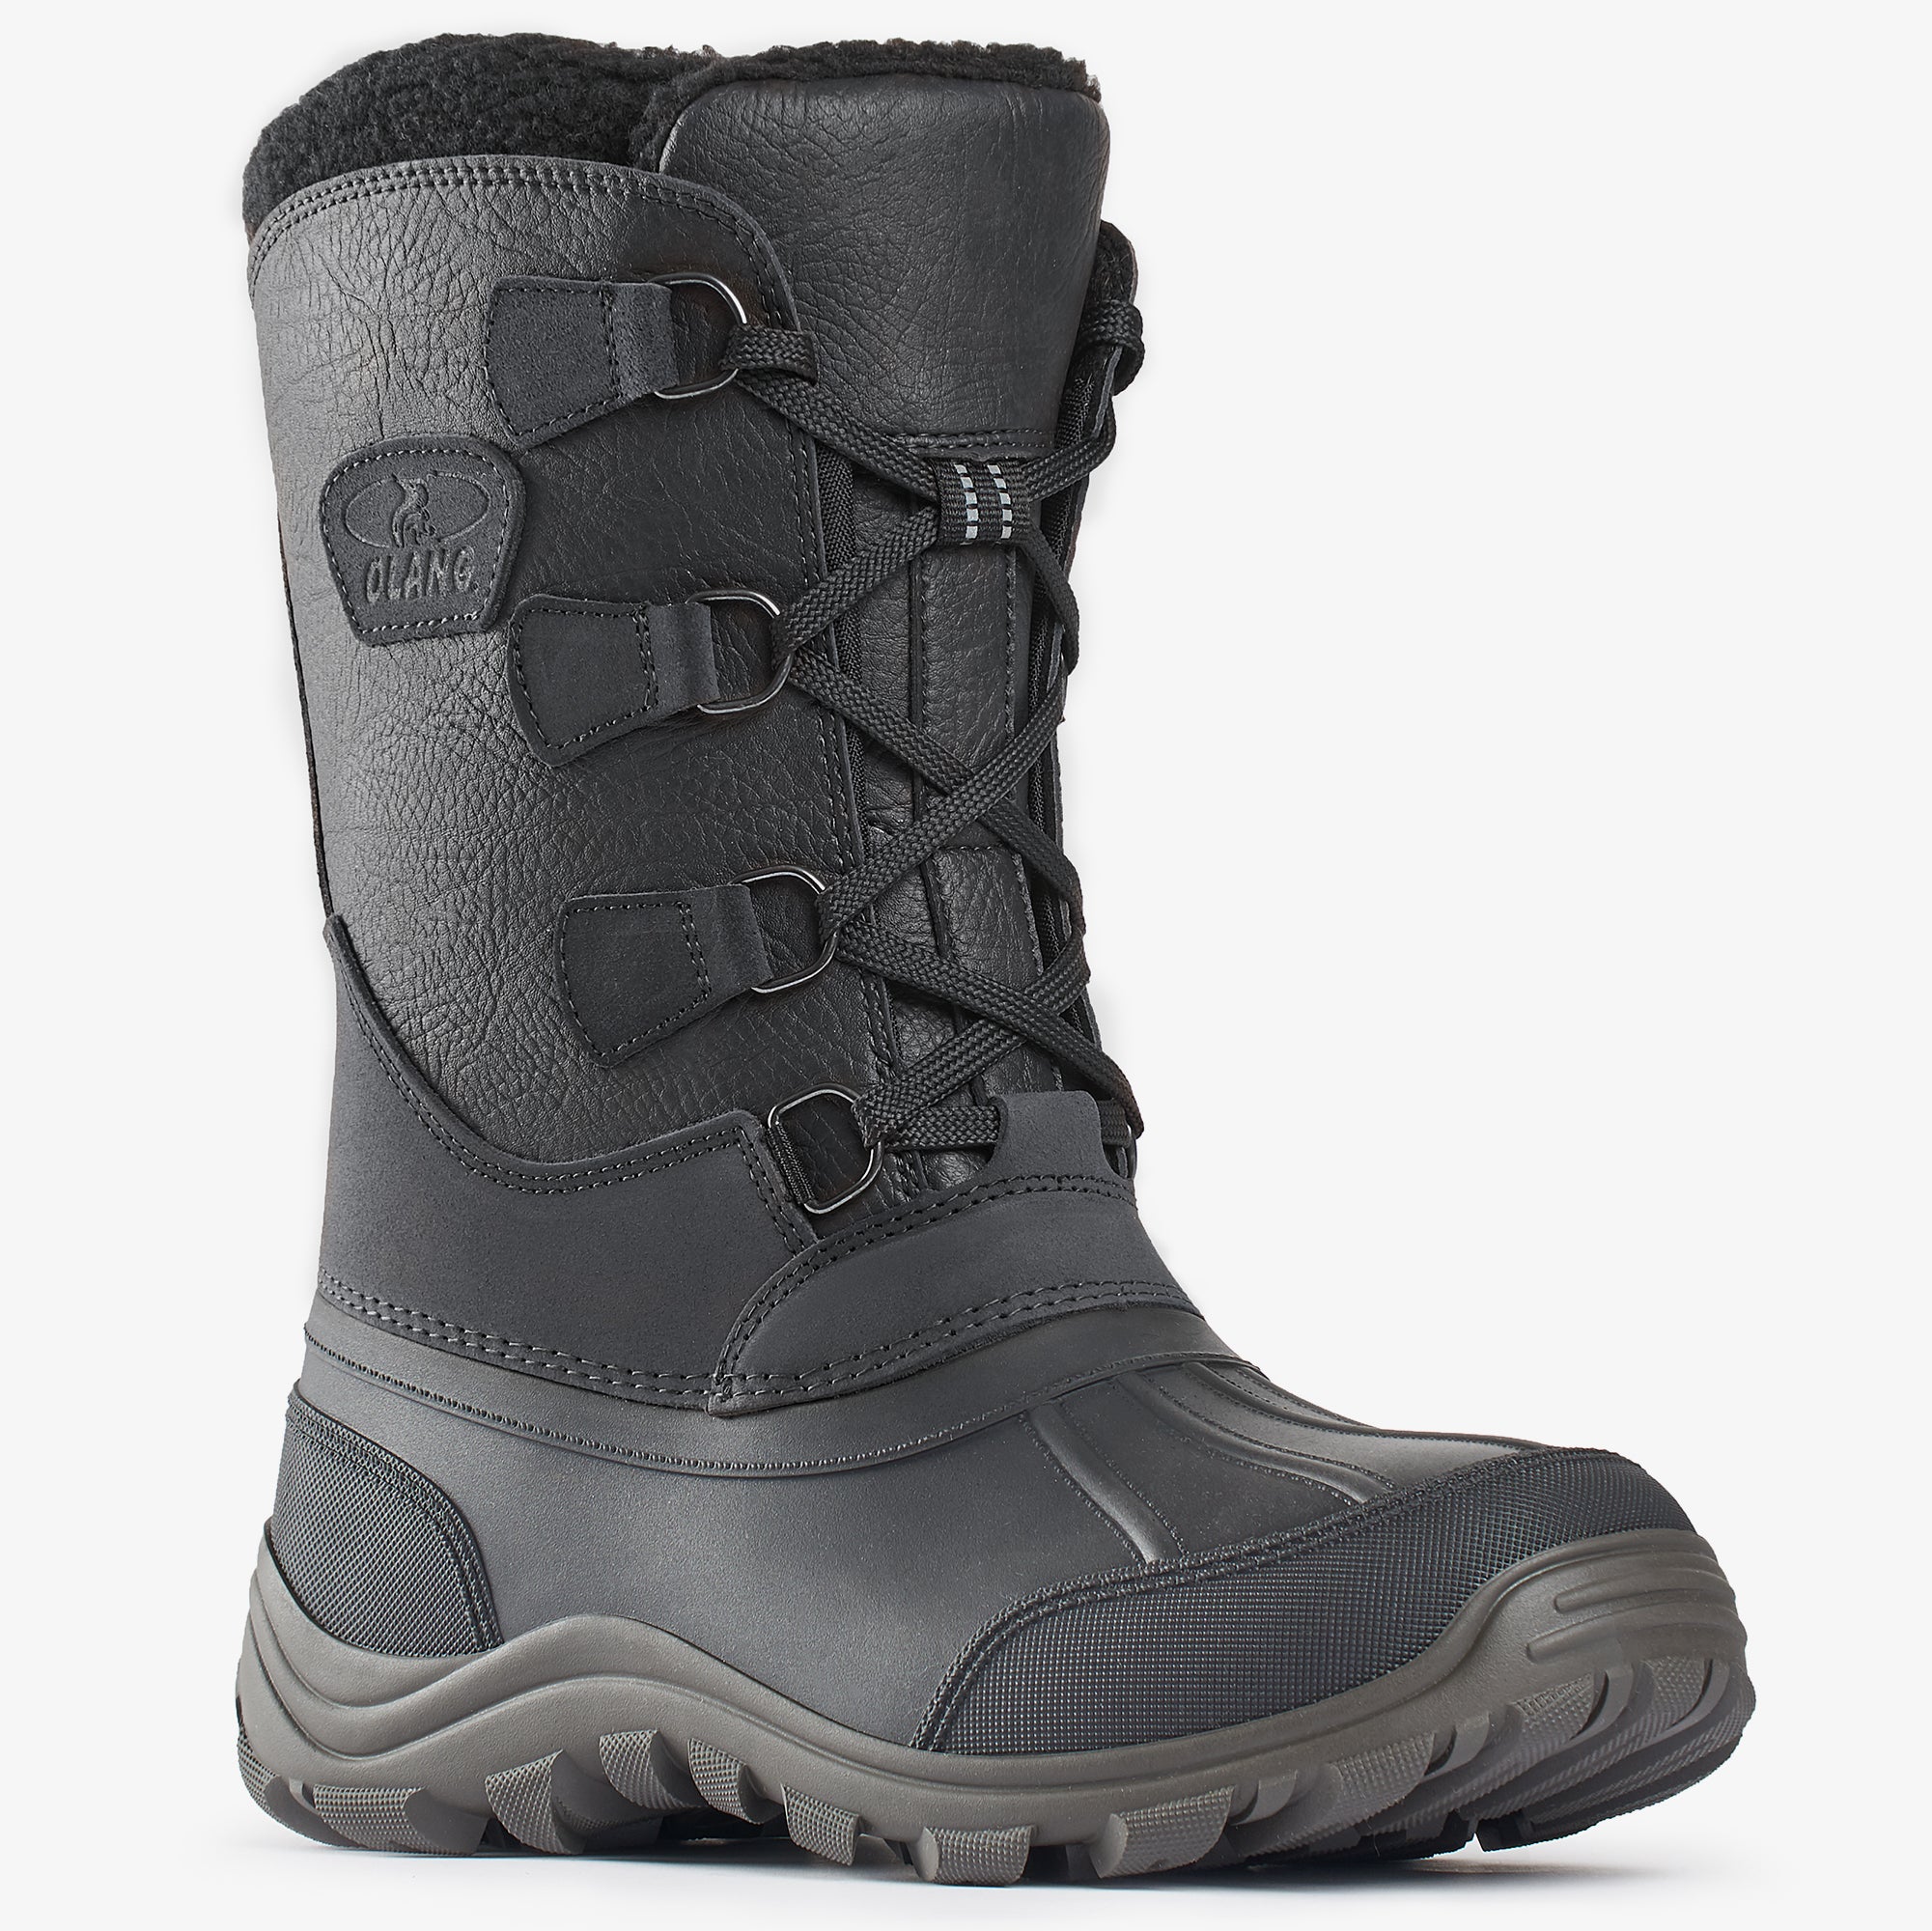 X-Cursion, Men's Winter Boots